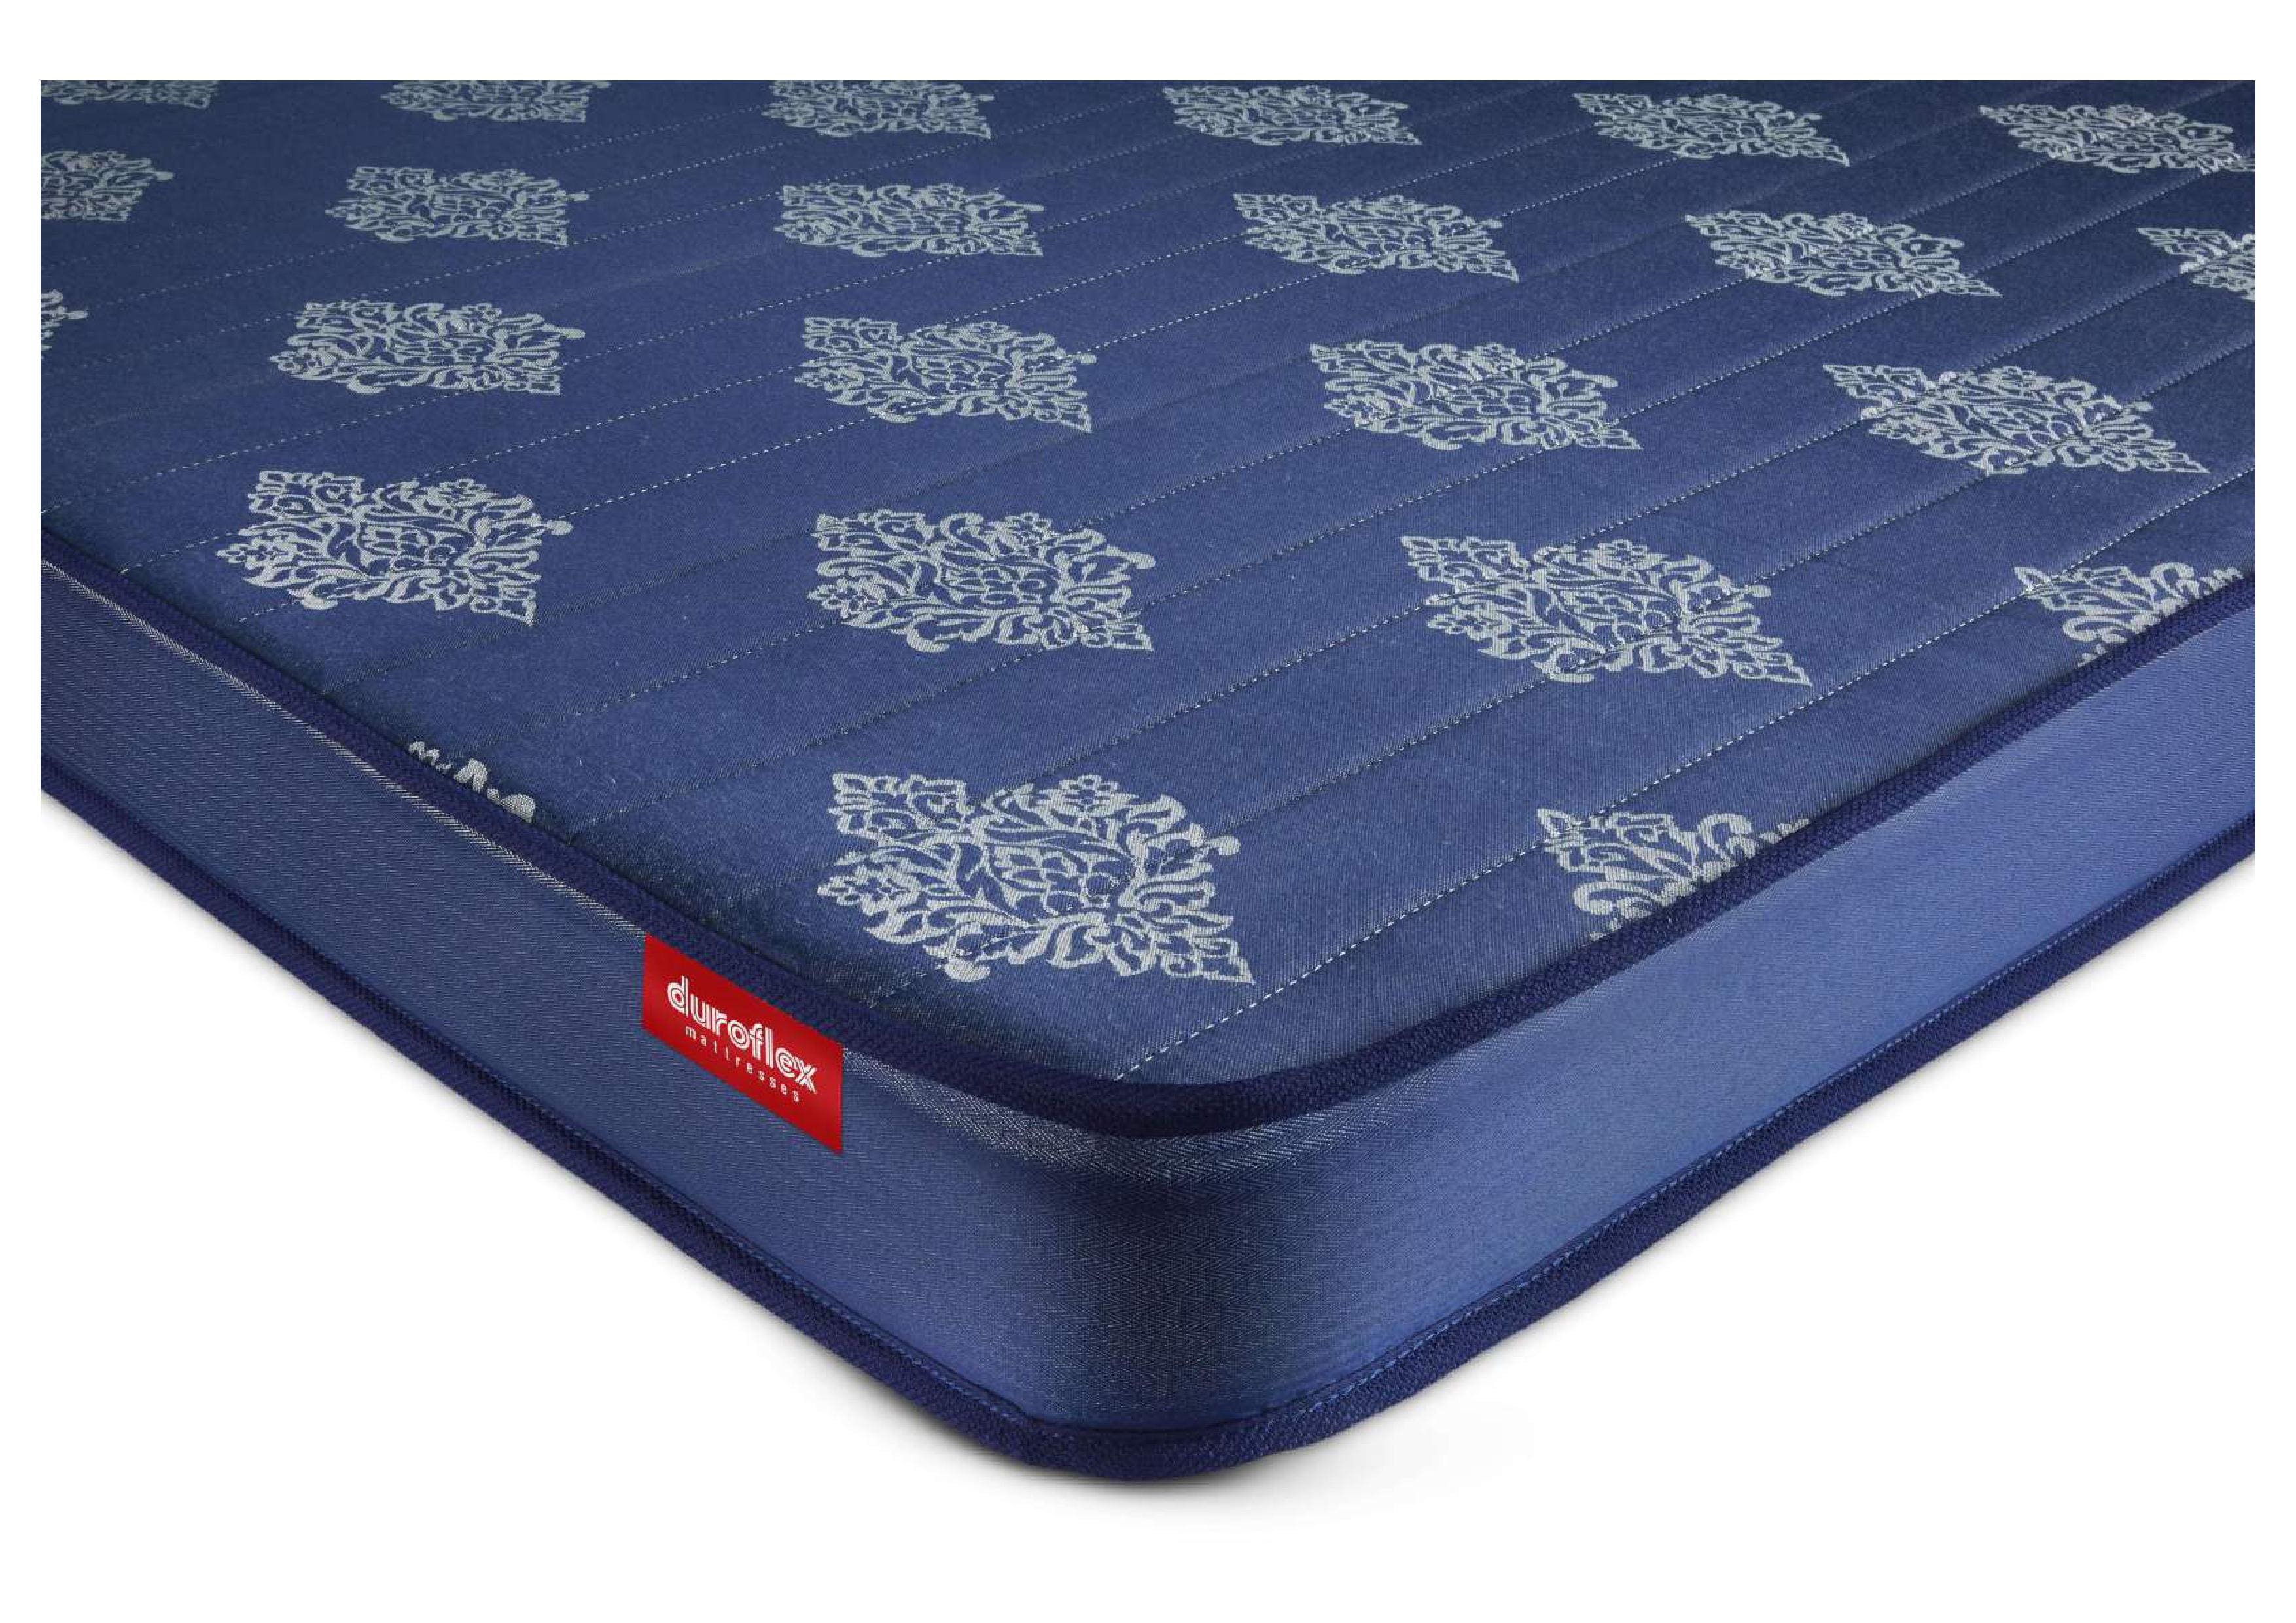 4-inch foam mattress for camper